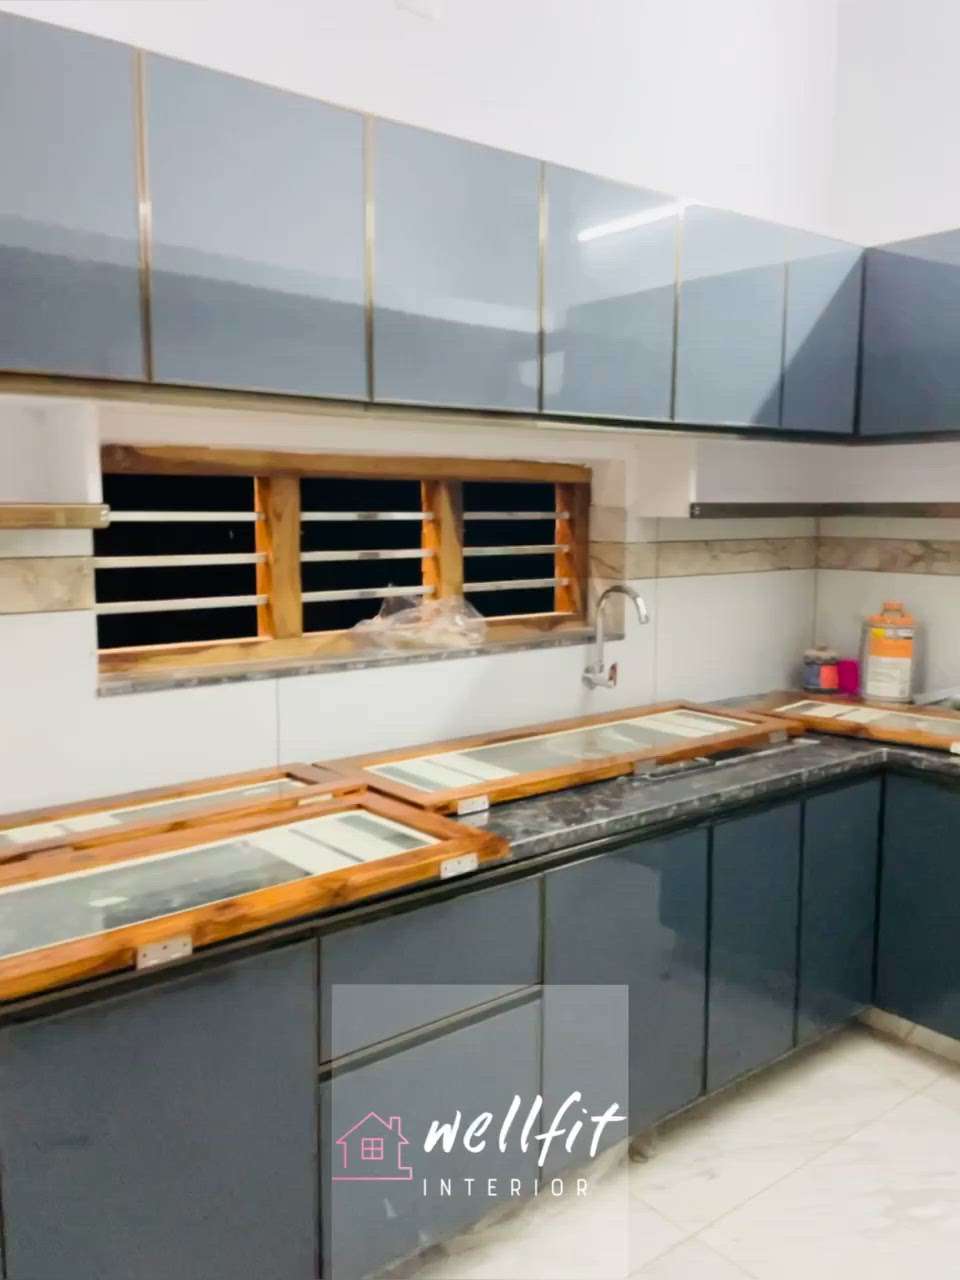 Budget friendly  #ModularKitchen  #KitchenIdeas  #ukichen  #KeralaStyleHouse  #InteriorDesigner  #Architect  #_palakkad_aluminium_fabrication_work_and_aluminium_modalur_kitchen_work_wellfit_interiors_design_palakkad_📲7907312996